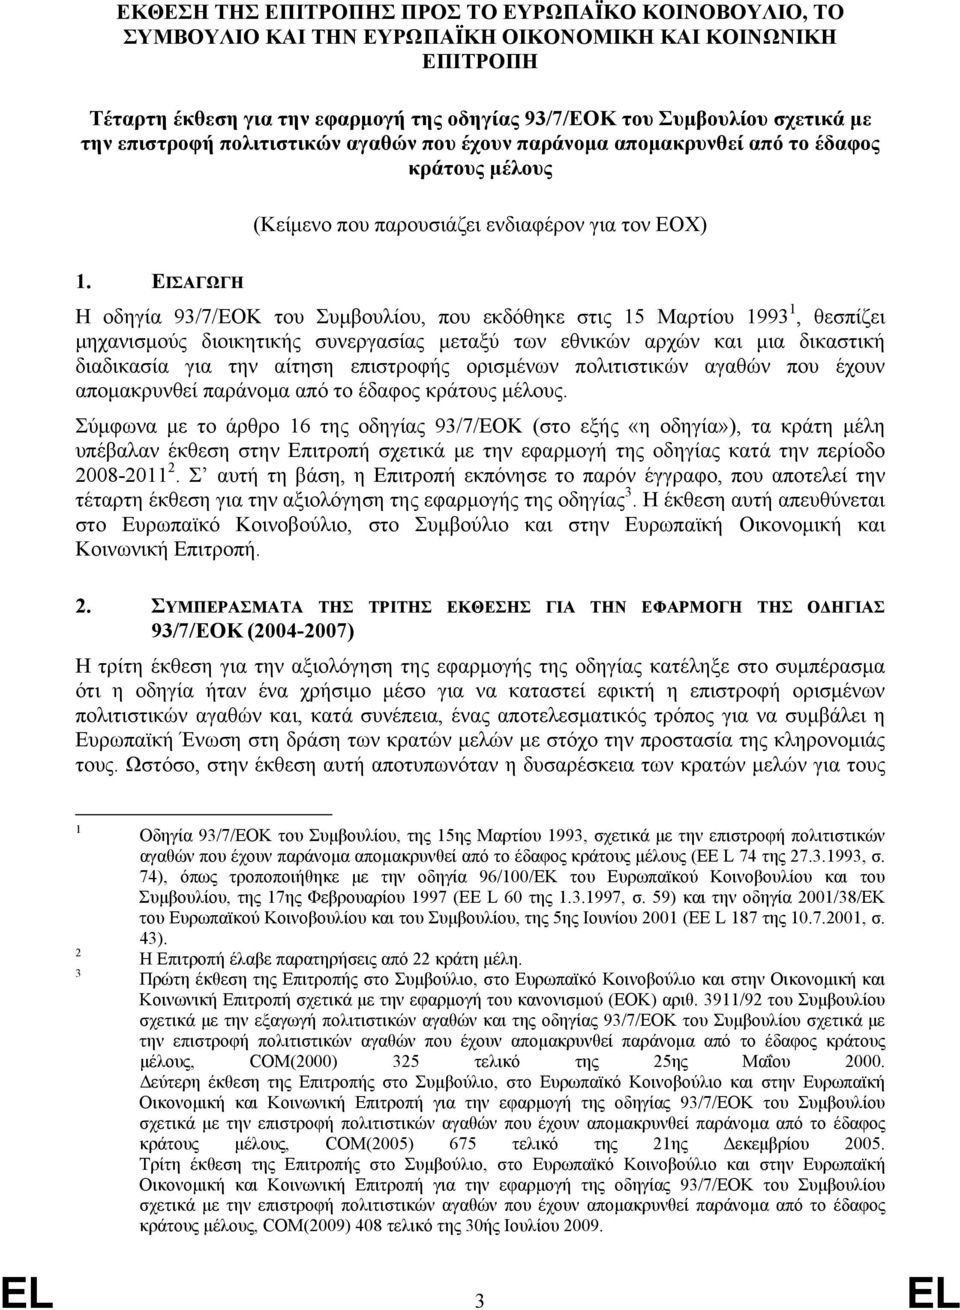 ΕΙΣΑΓΩΓΗ Η οδηγία 93/7/ΕΟΚ του Συμβουλίου, που εκδόθηκε στις 15 Μαρτίου 1993 1, θεσπίζει μηχανισμούς διοικητικής συνεργασίας μεταξύ των εθνικών αρχών και μια δικαστική διαδικασία για την αίτηση